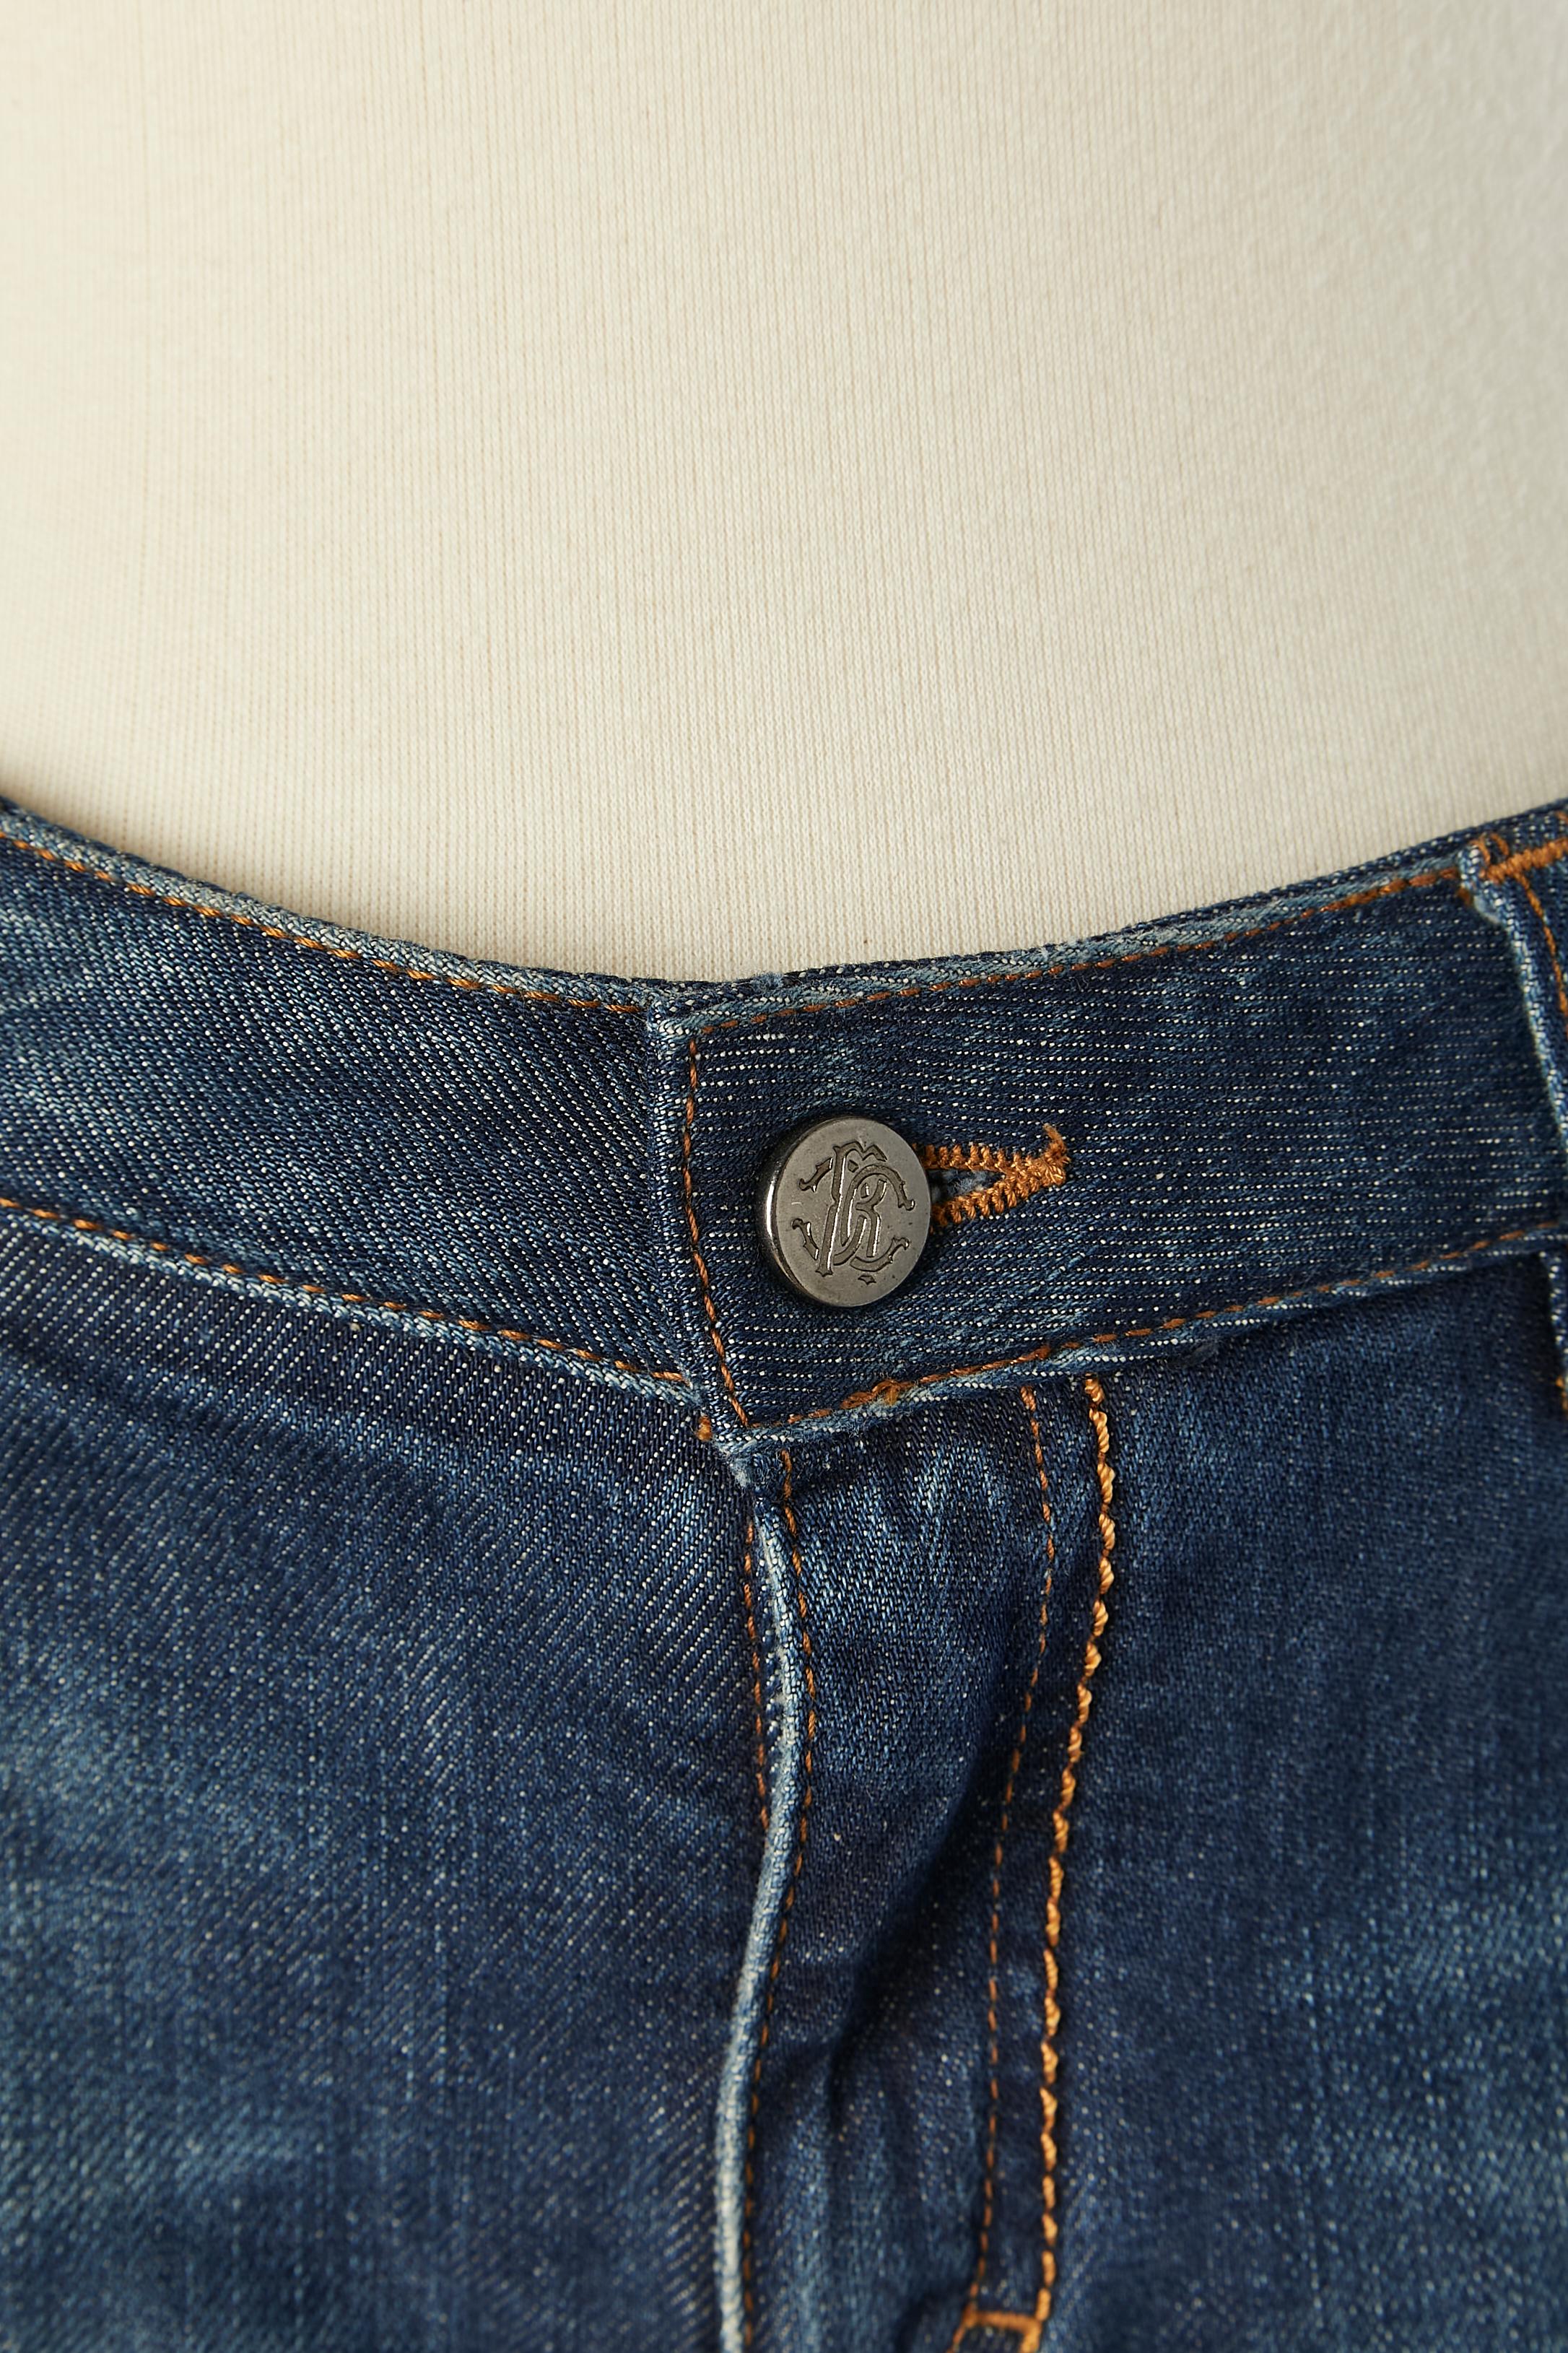 Blaue Denim-Jeans mit Metallic-Nieten und Öse an der Seite. Markenknöpfe und Markennieten neben den Taschen. Reißverschluss in der Mitte der Vorderseite. Echtheitshologramm. 
Zusammensetzung des Futters (von der Taille bis zu den Knien):